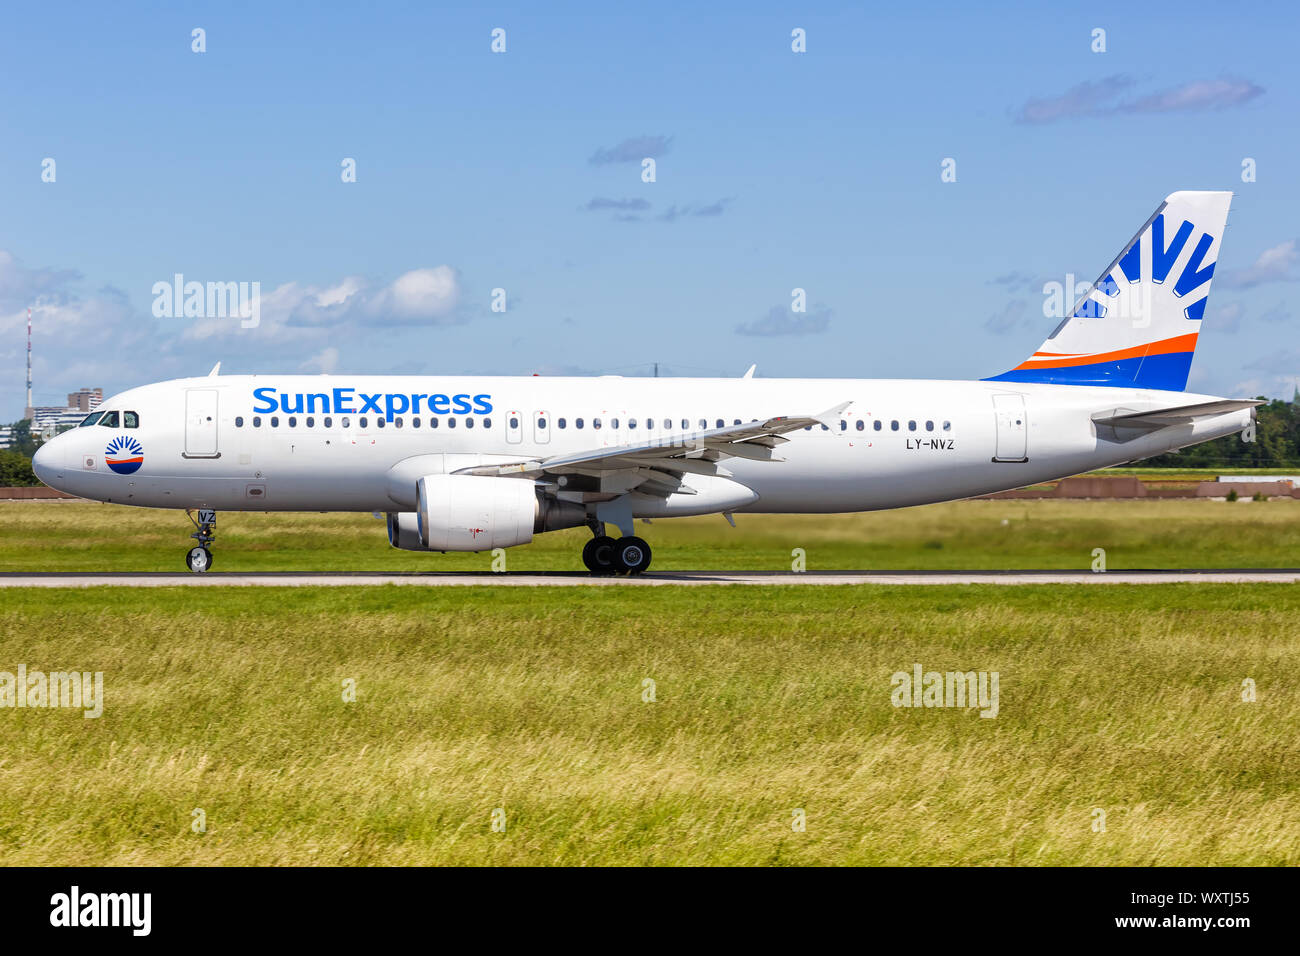 Stuttgart, Deutschland - Juni 8, 2019: SunExpress Airbus A320 Flugzeug am Flughafen Stuttgart (STR) in Deutschland. Stockfoto